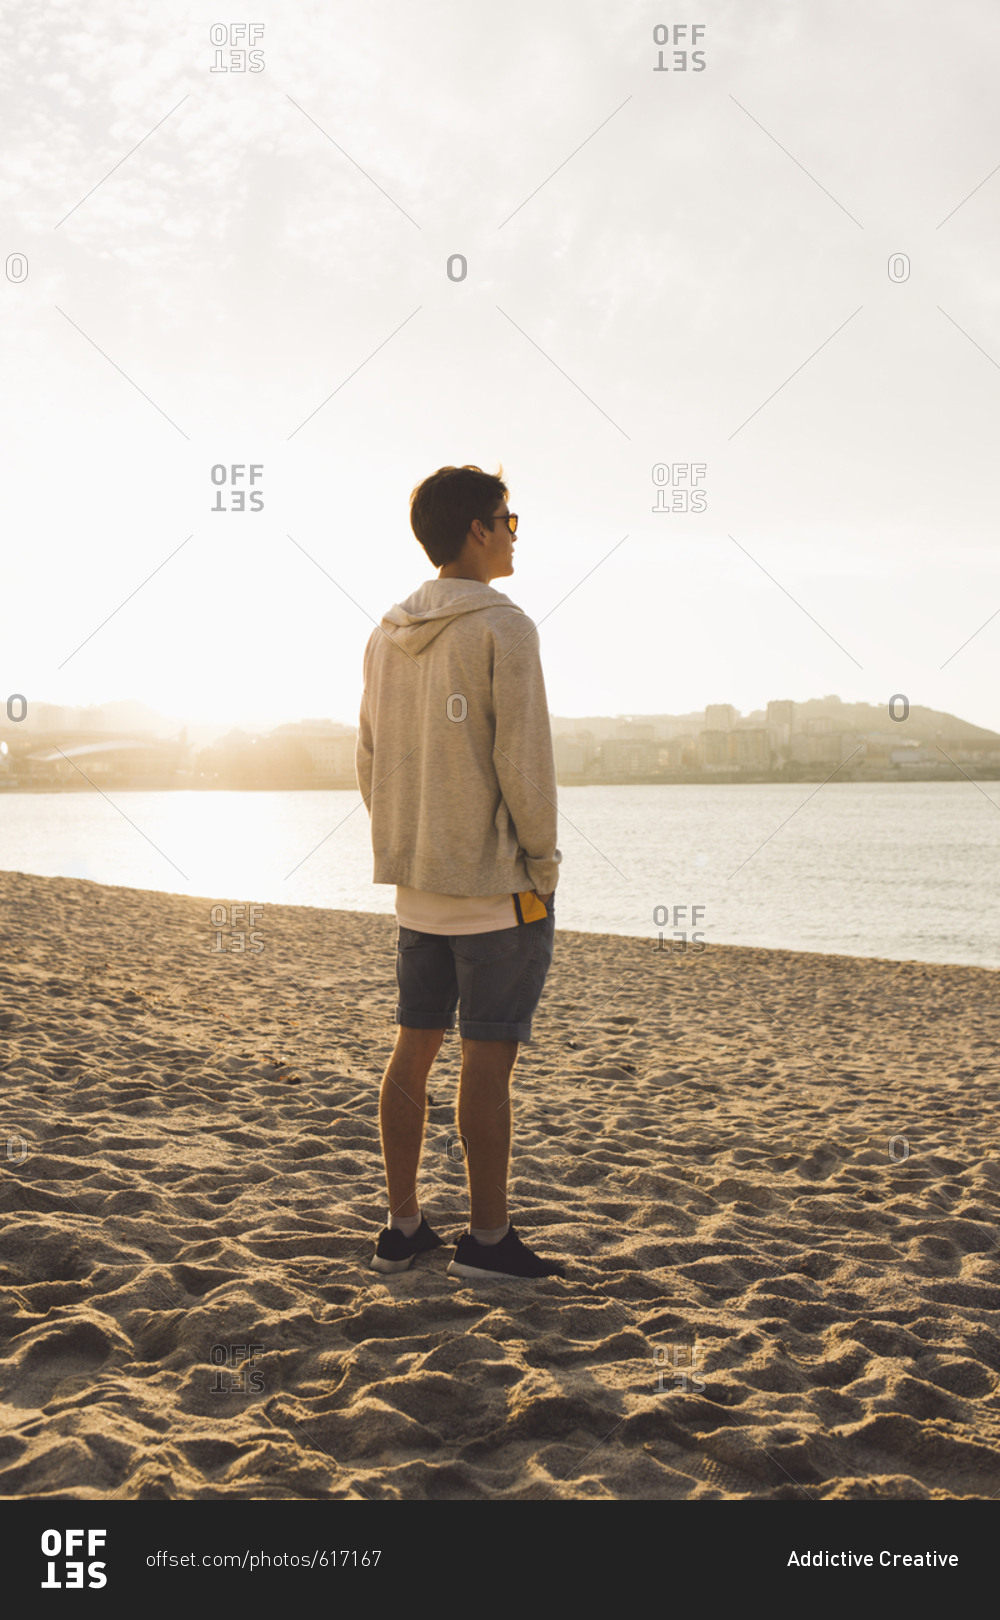 Man posing on beach - Offset stock photo - OFFSET